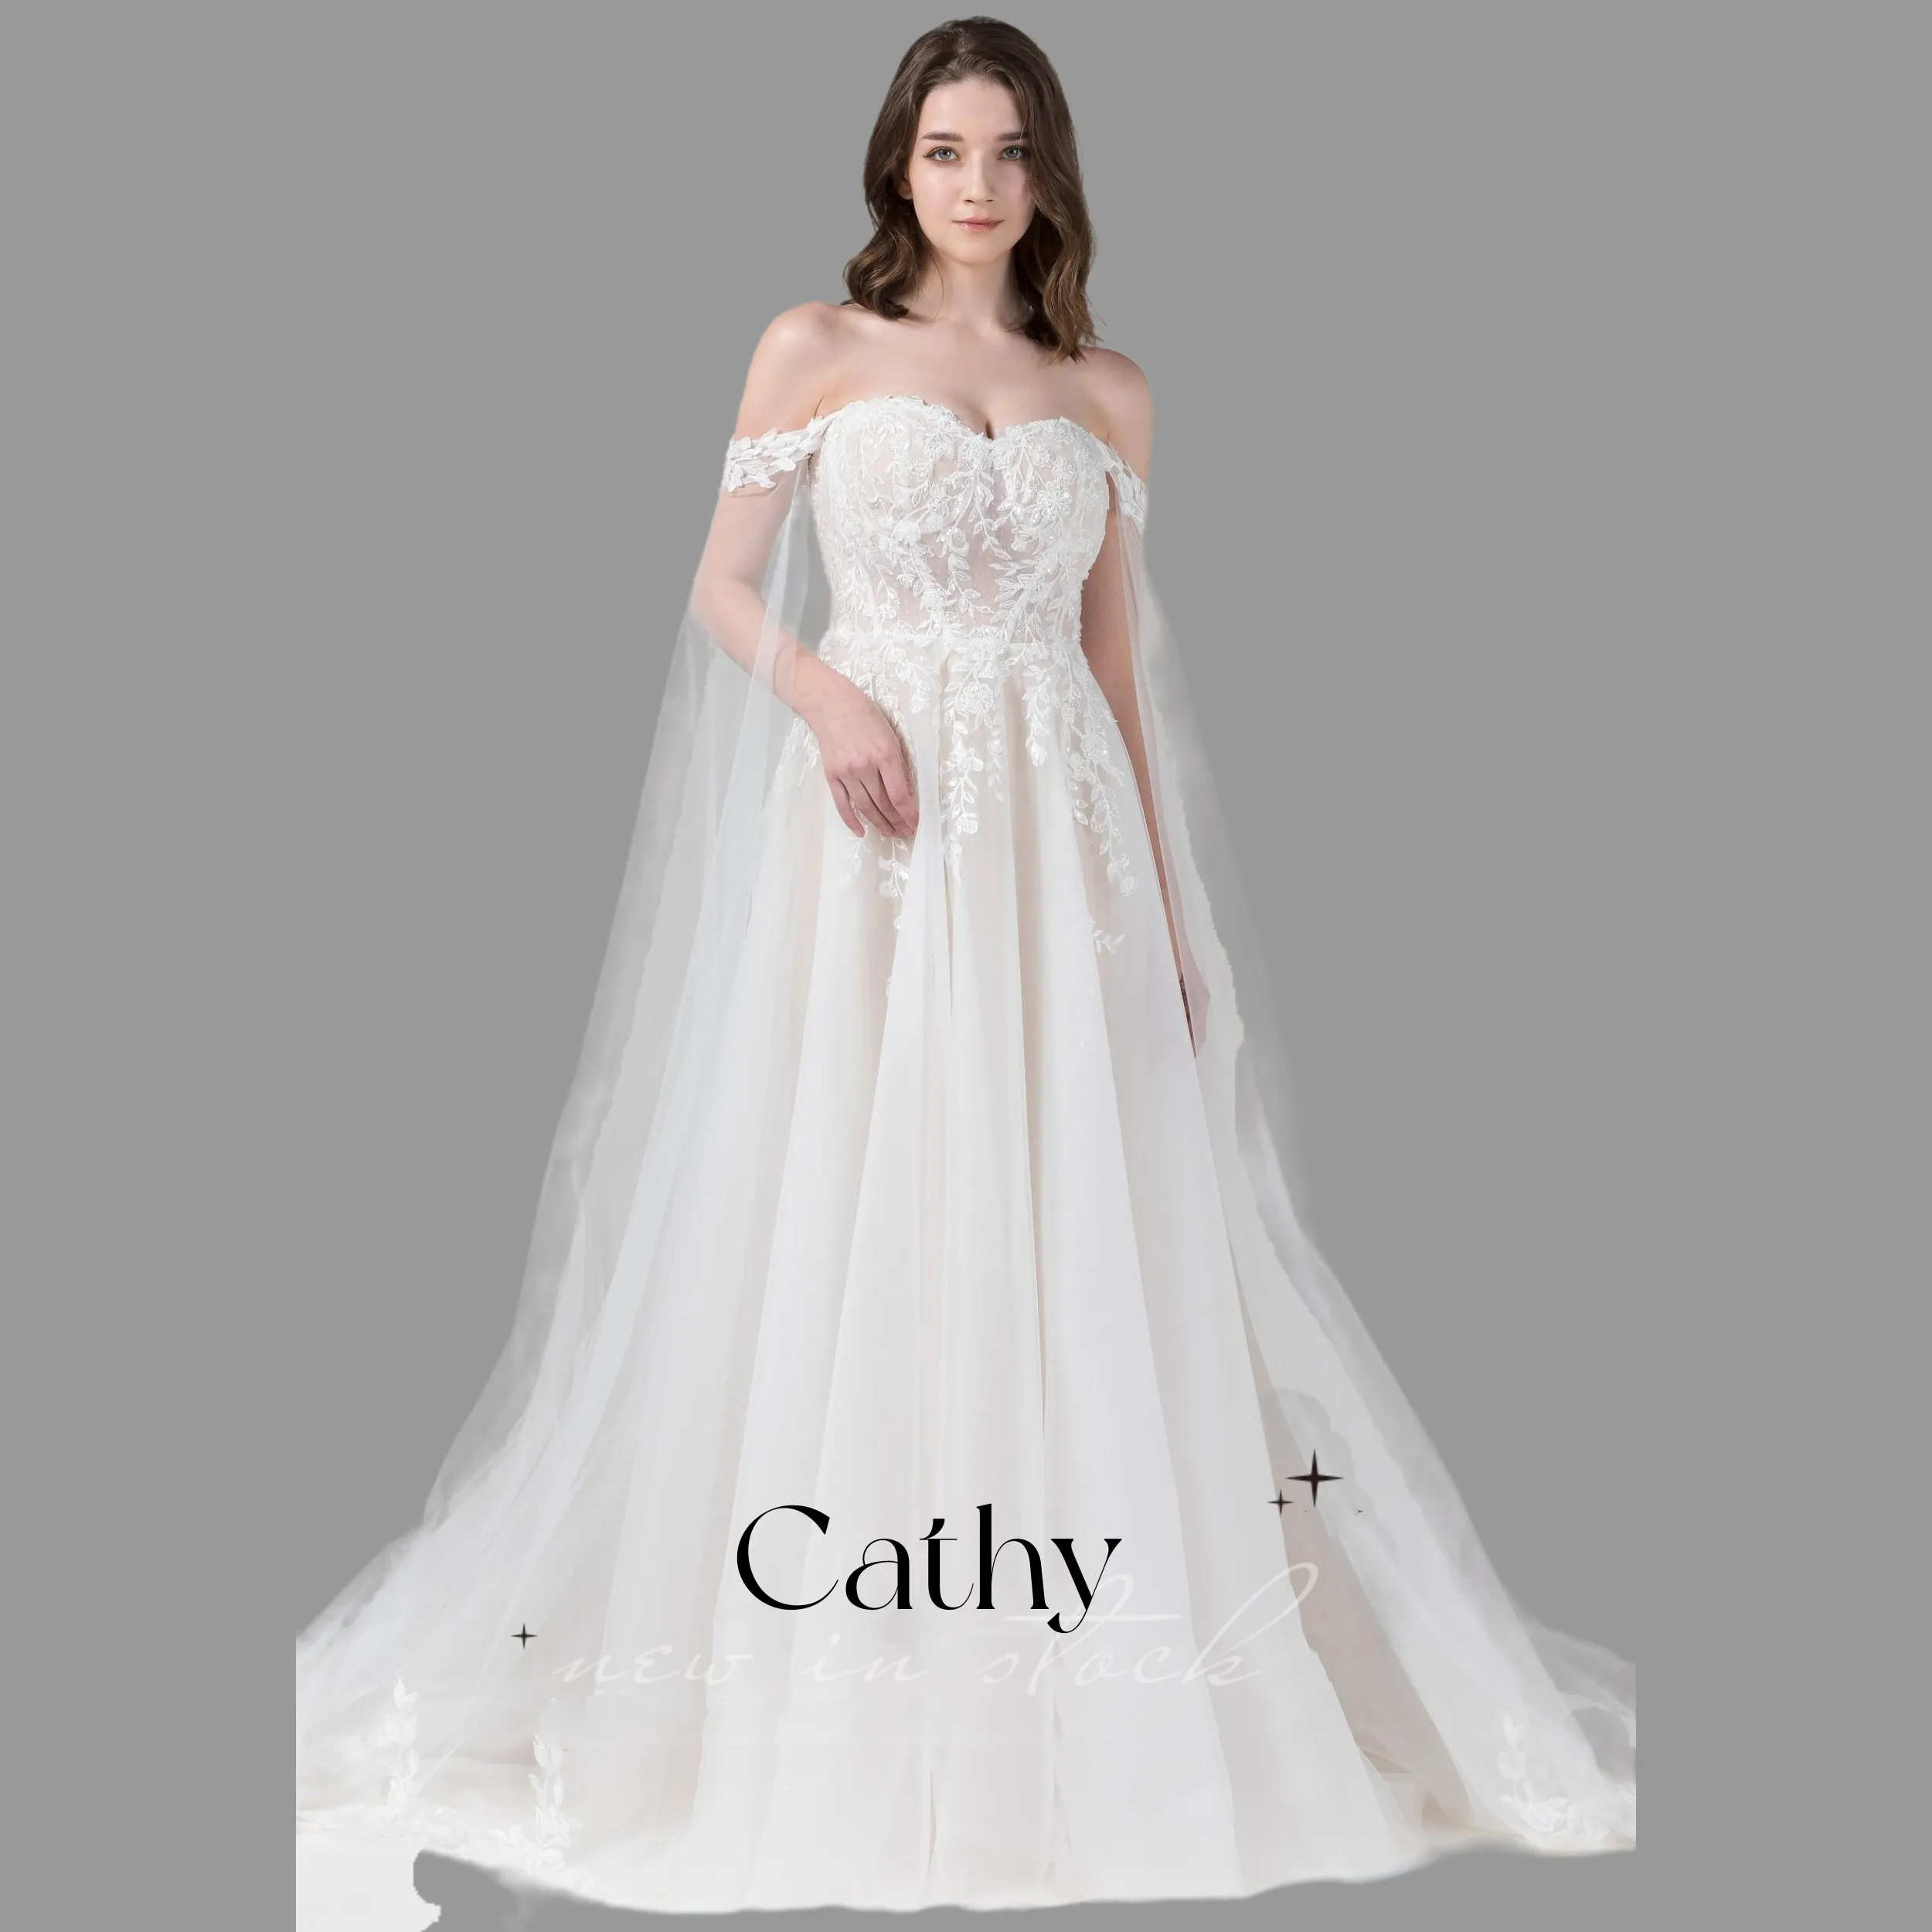 

Женское свадебное платье с открытыми плечами Cathy, нежное кружевное ТРАПЕЦИЕВИДНОЕ платье из тюля с аппликацией, индивидуальный пошив